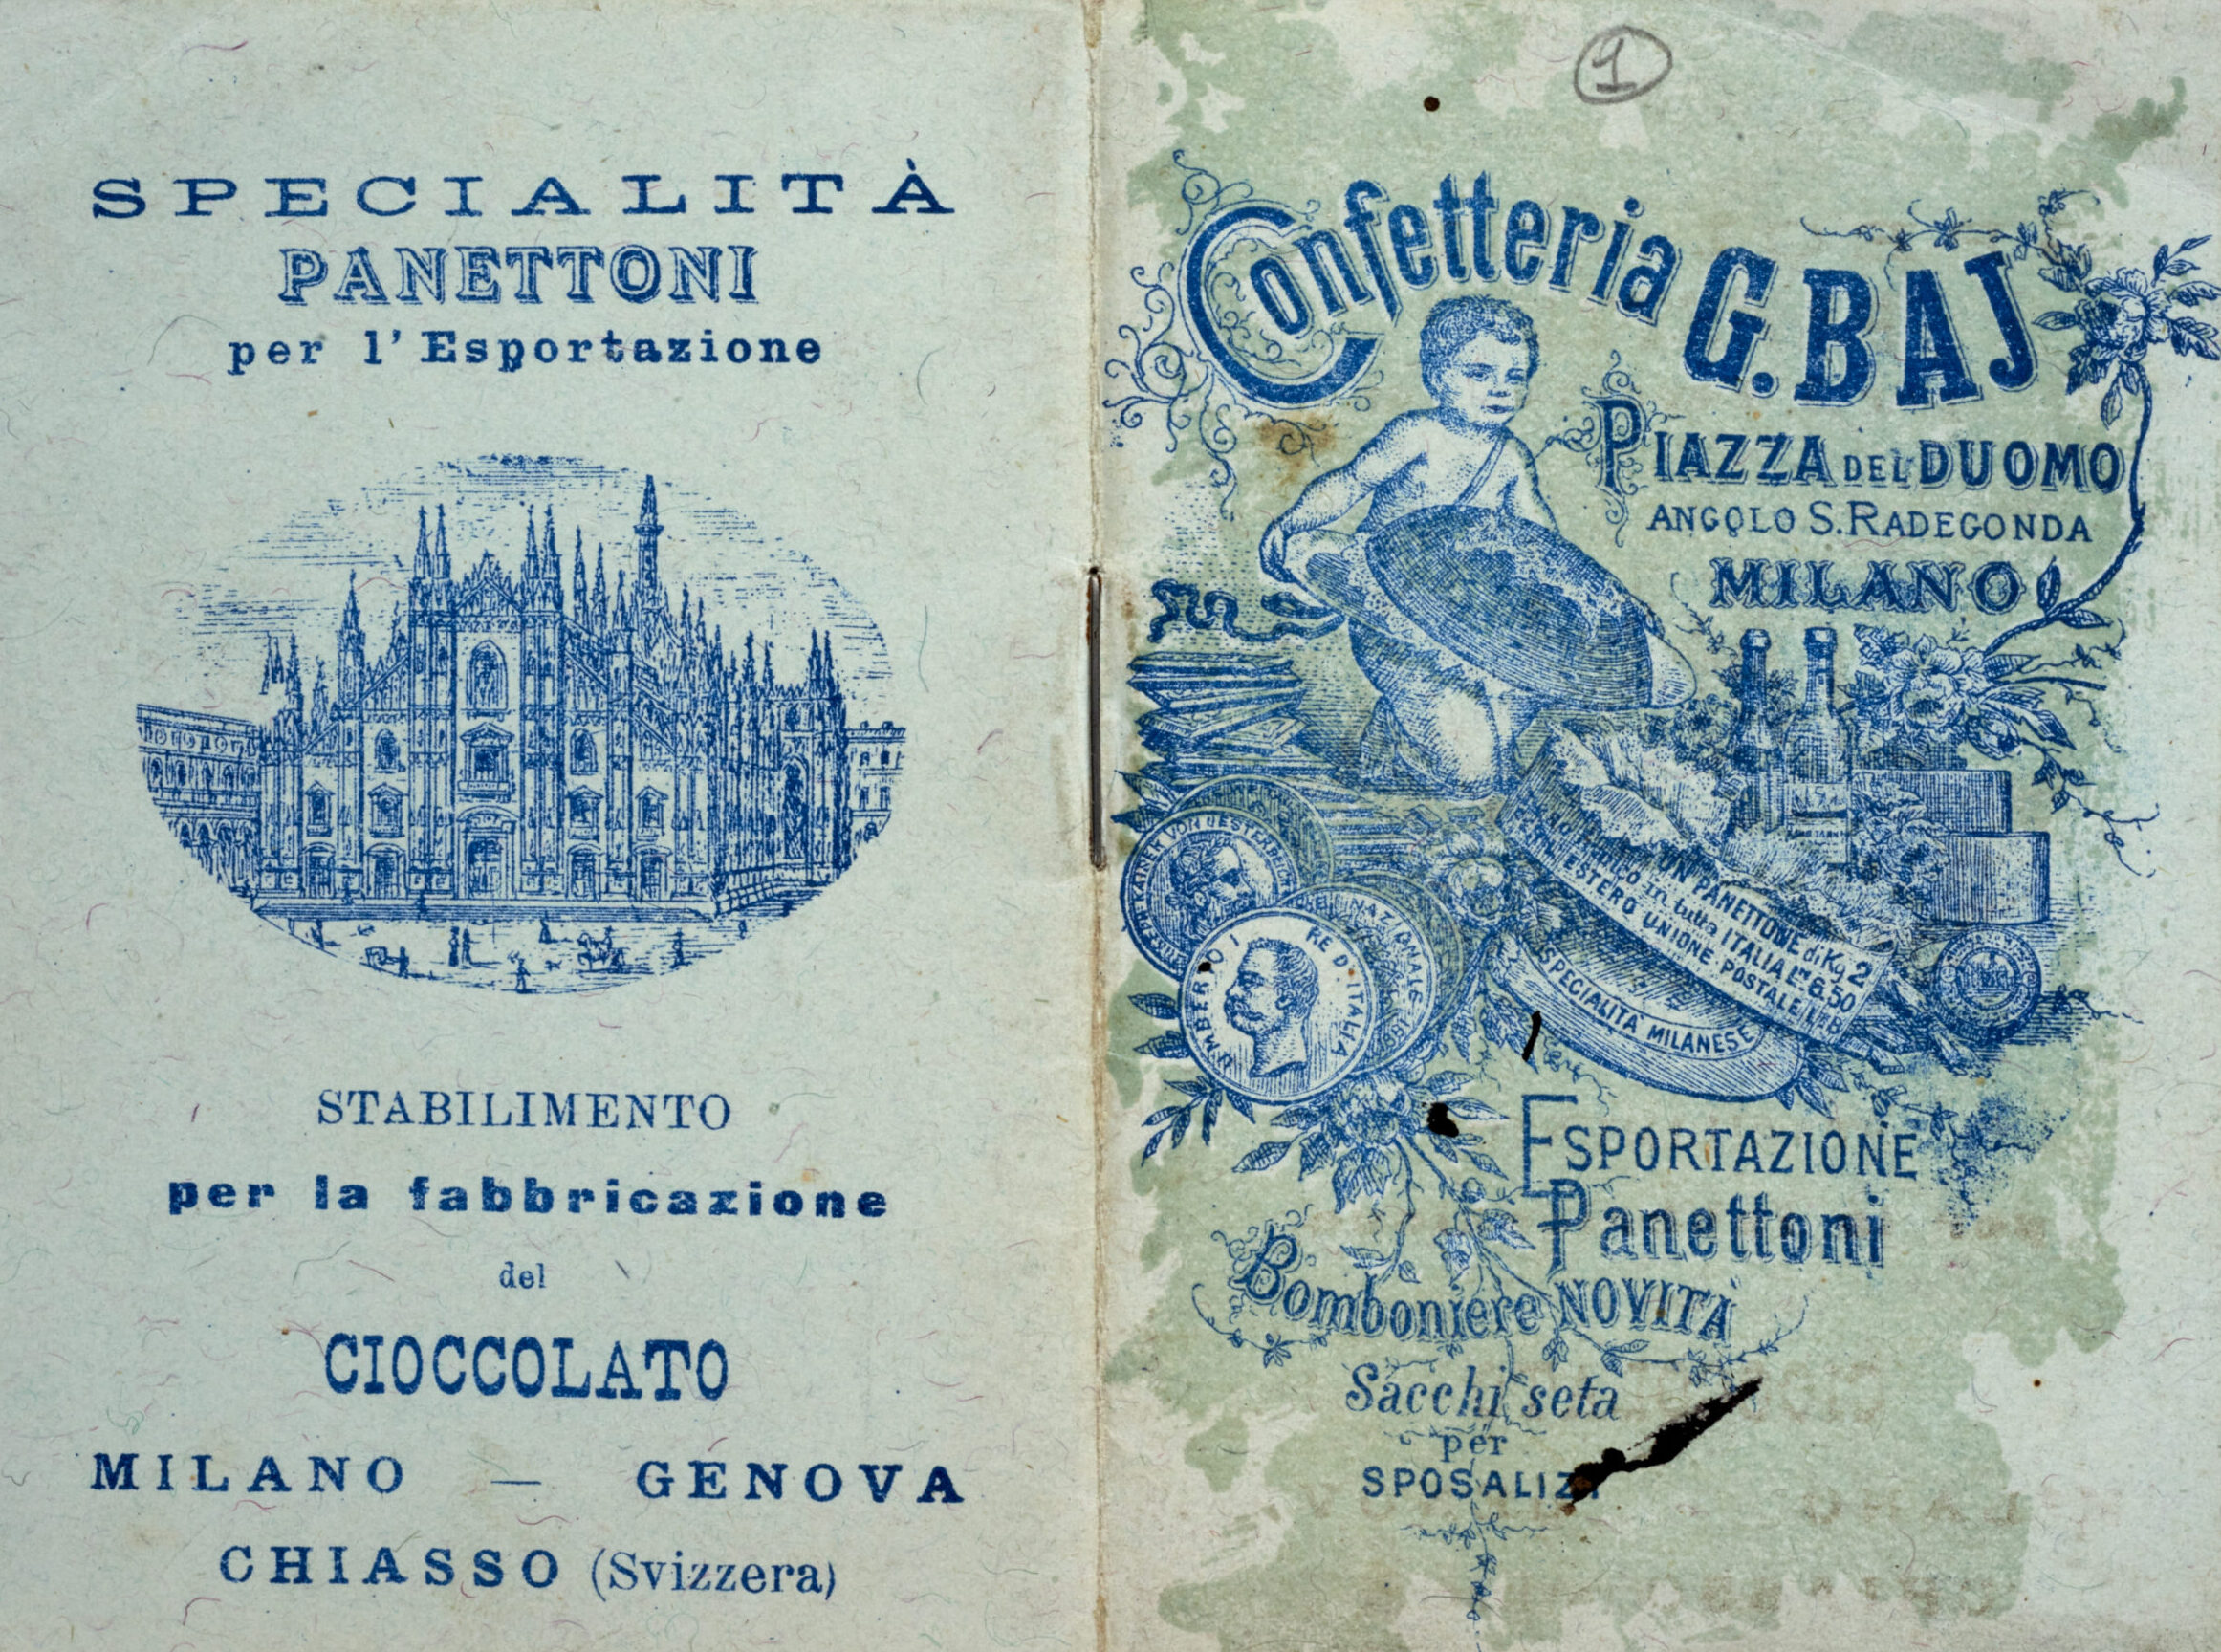 Copertina libretto Confetteria Giuseppe Baj - Piazza del Duomo - Specialità Panettoni per l'esportazione - Milano Genova Chiasso